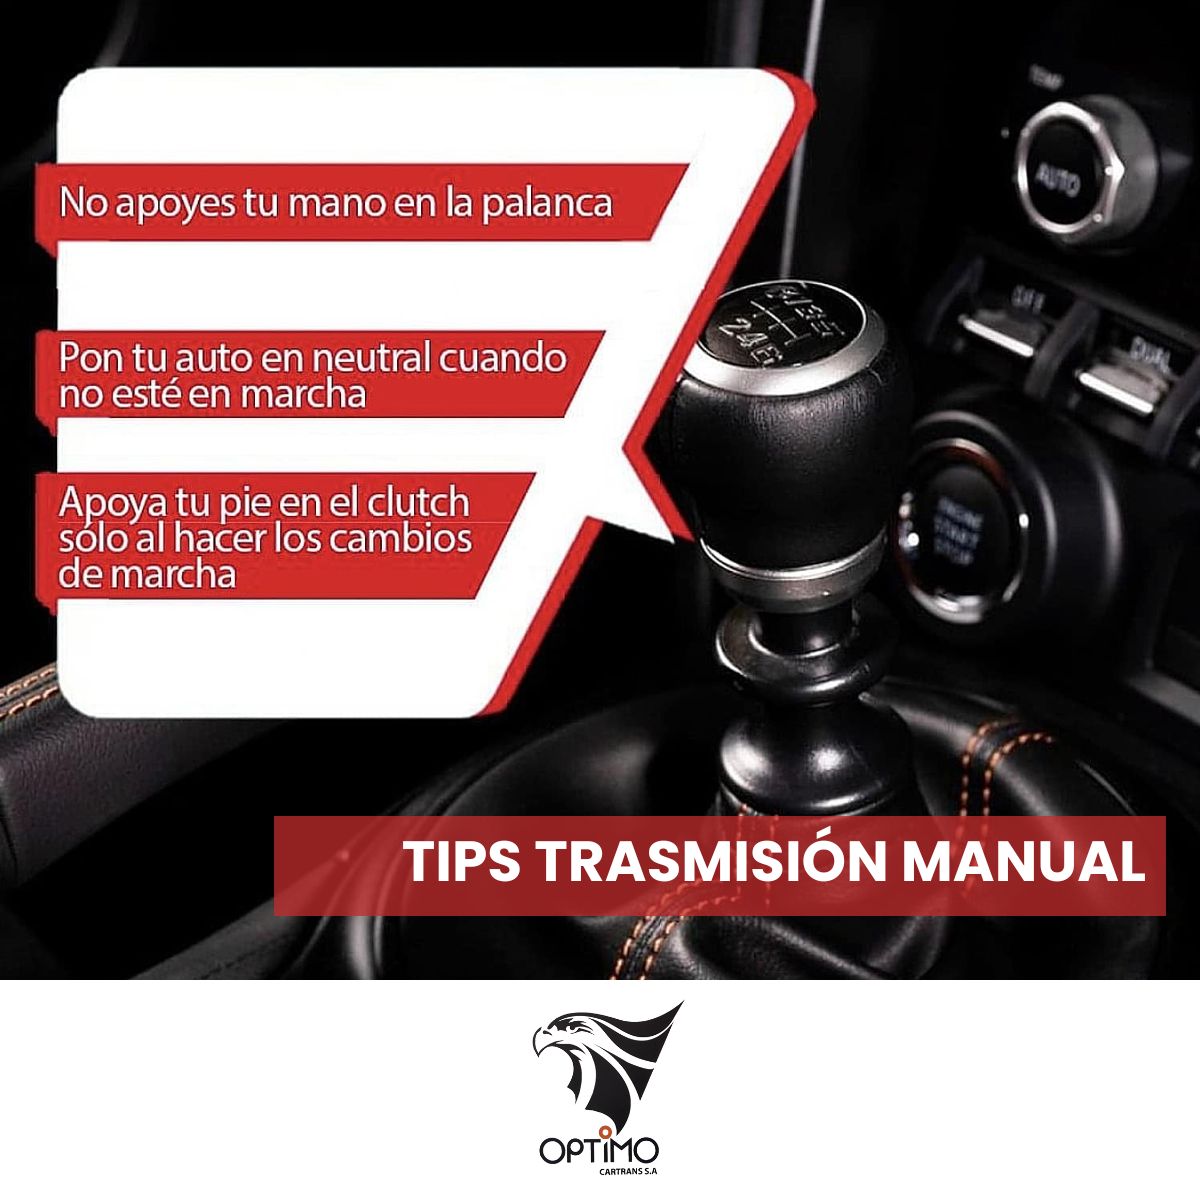 🚗🚘🚙 Cuida tu inversión. Te dejamos unos tips para la caja de transmisión manual. #URGENTE #Optimocartrans